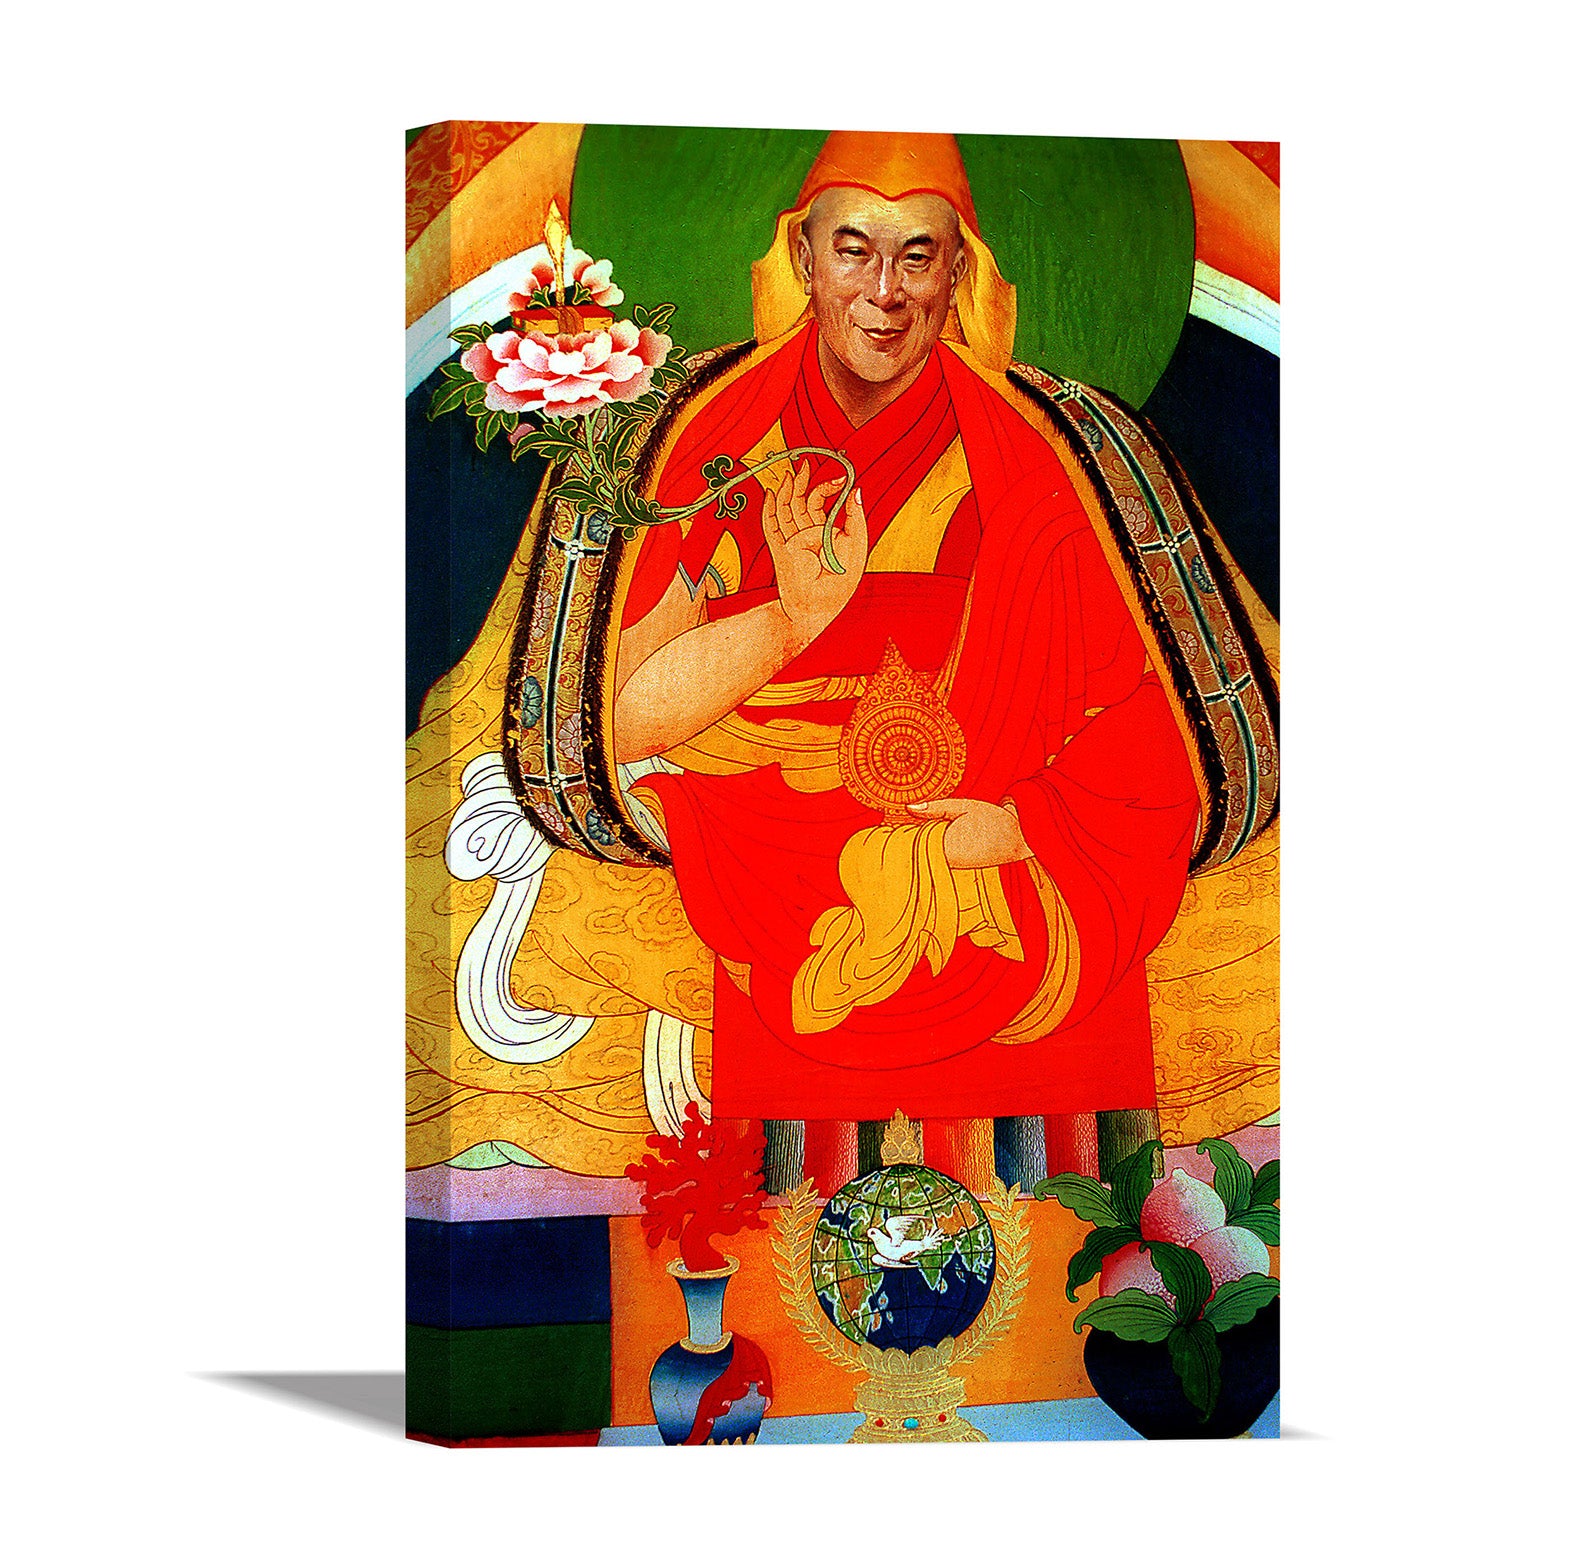 Dorje Shugden with Flower